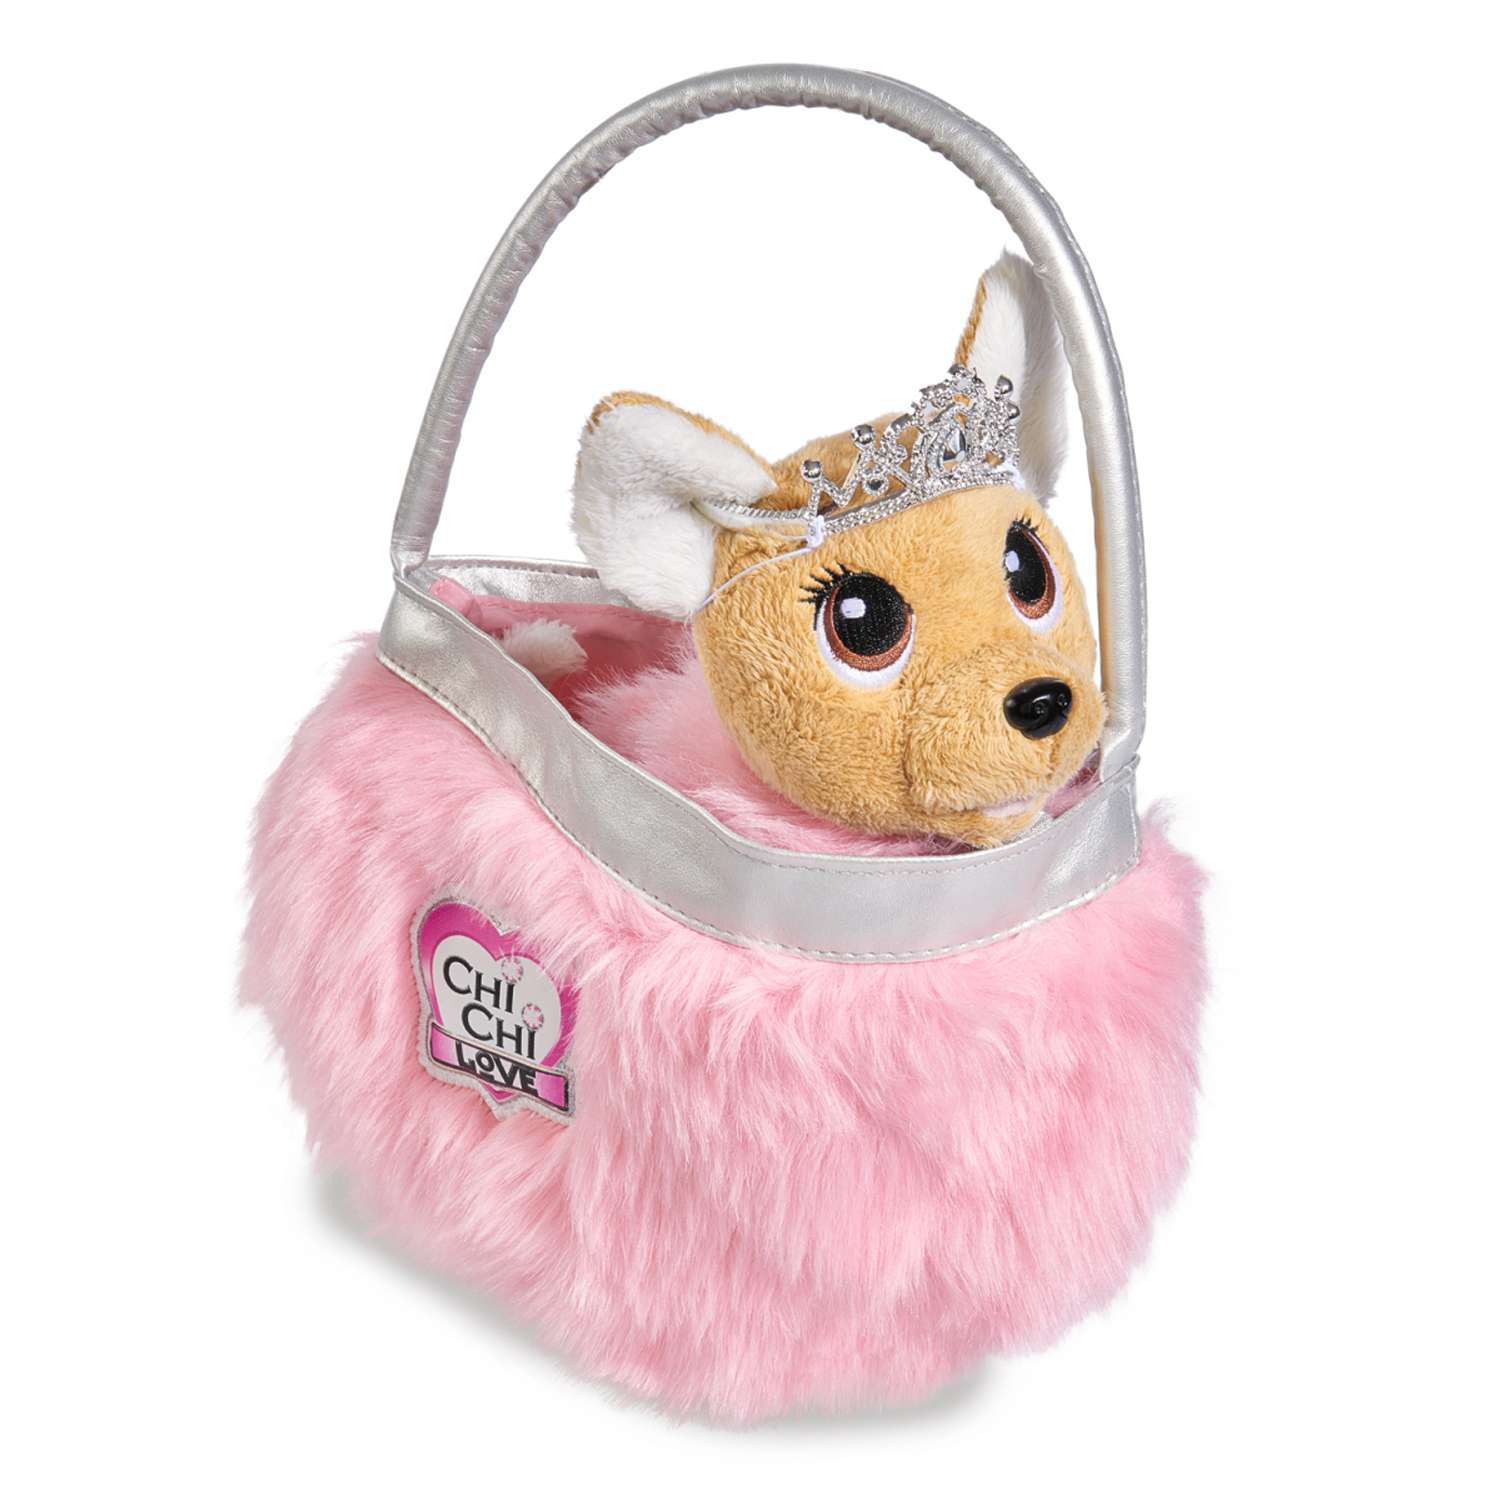 Мягкая игрушка Сhi Chi Love Плюшевая собачка 20 см Принцесса c пушистой сумкой 5893126-МП - фото 2